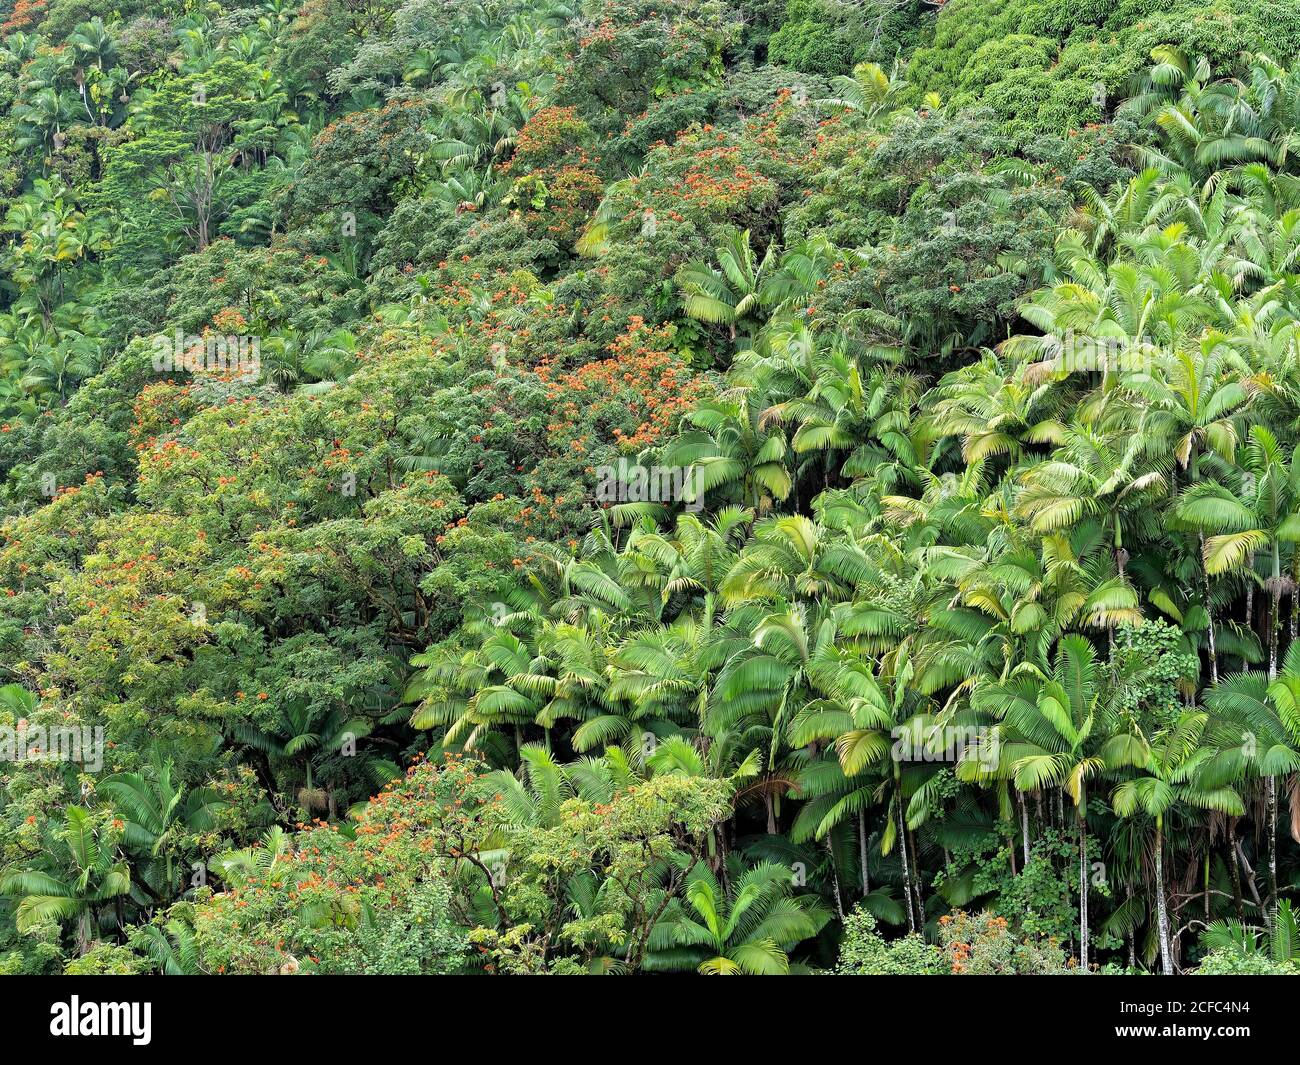 Arecaceae botanische Familie, Hawaii, Big Island, Natur, tropisch, USA, Palmen, Vegetation, grüne Farben, beruhigend, beruhigend, Gesundheit Stockfoto